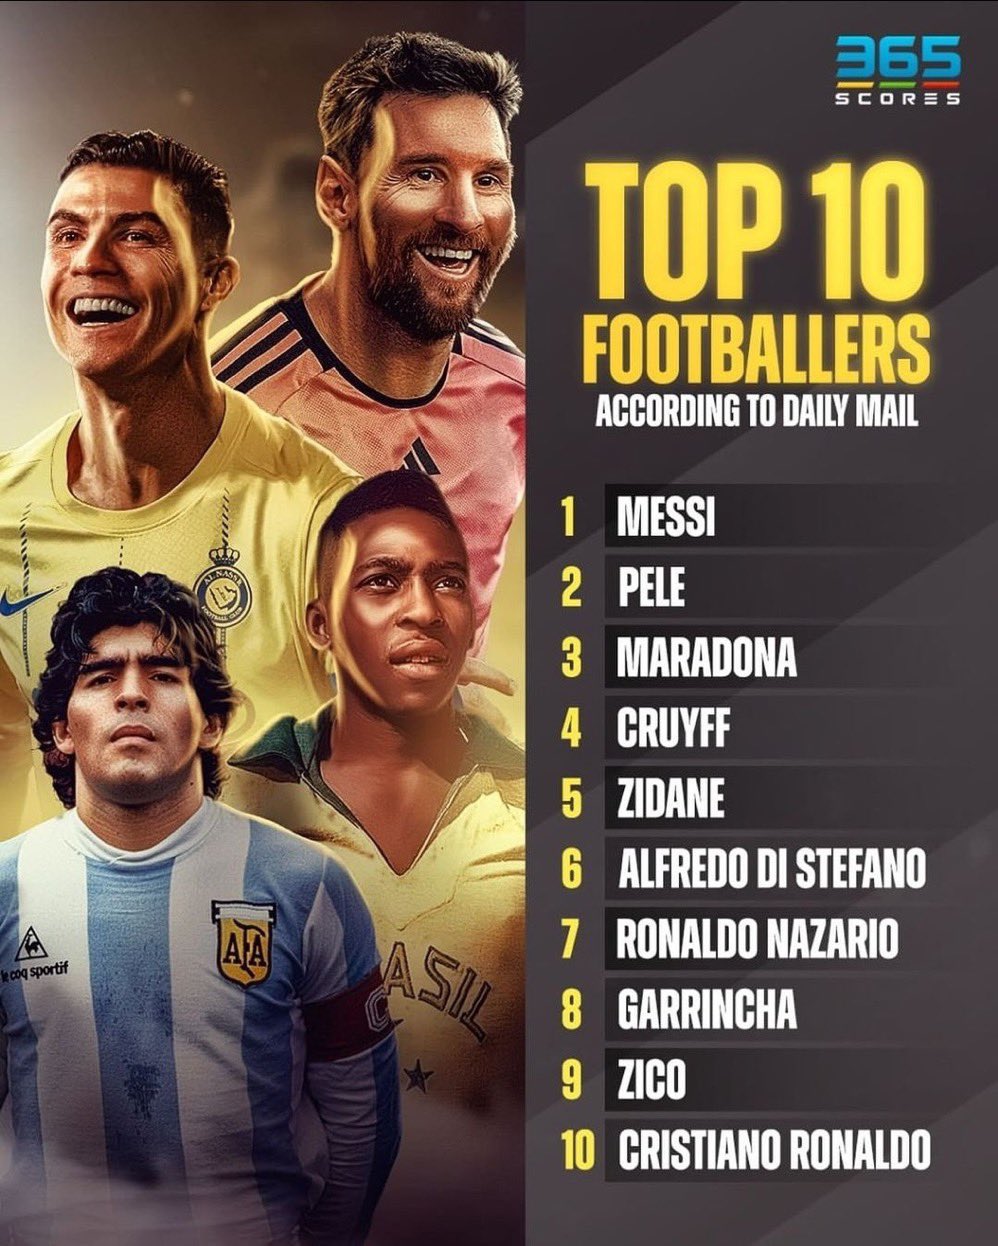 10 cầu thủ vĩ đại nhất lịch sử: Messi số 1, Ronaldo đứng ở vị trí thấp không ngờ- Ảnh 5.